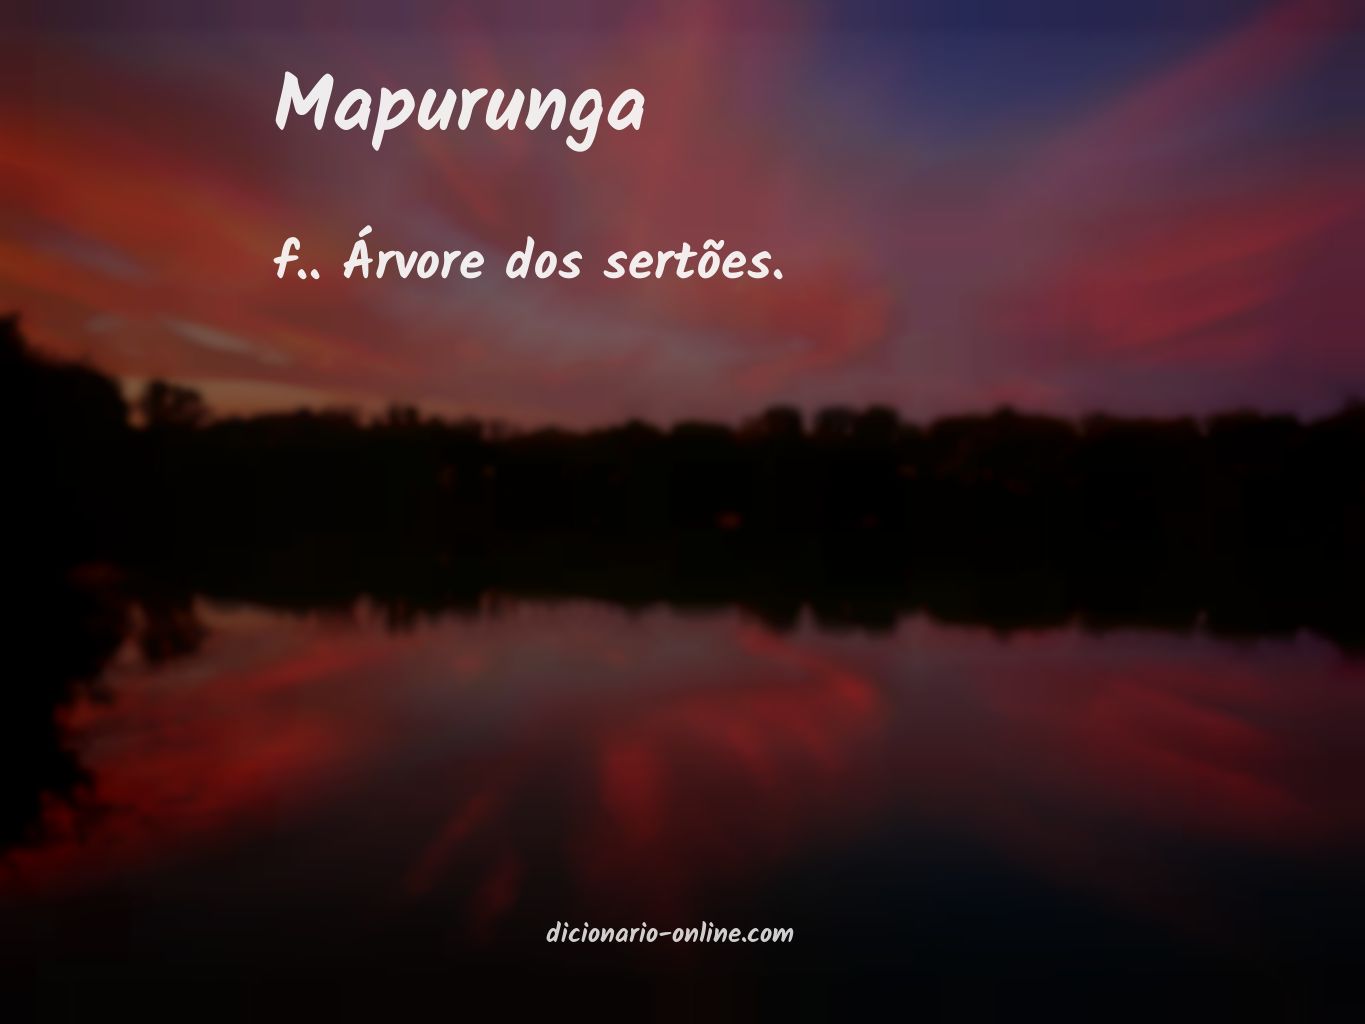 Significado de mapurunga